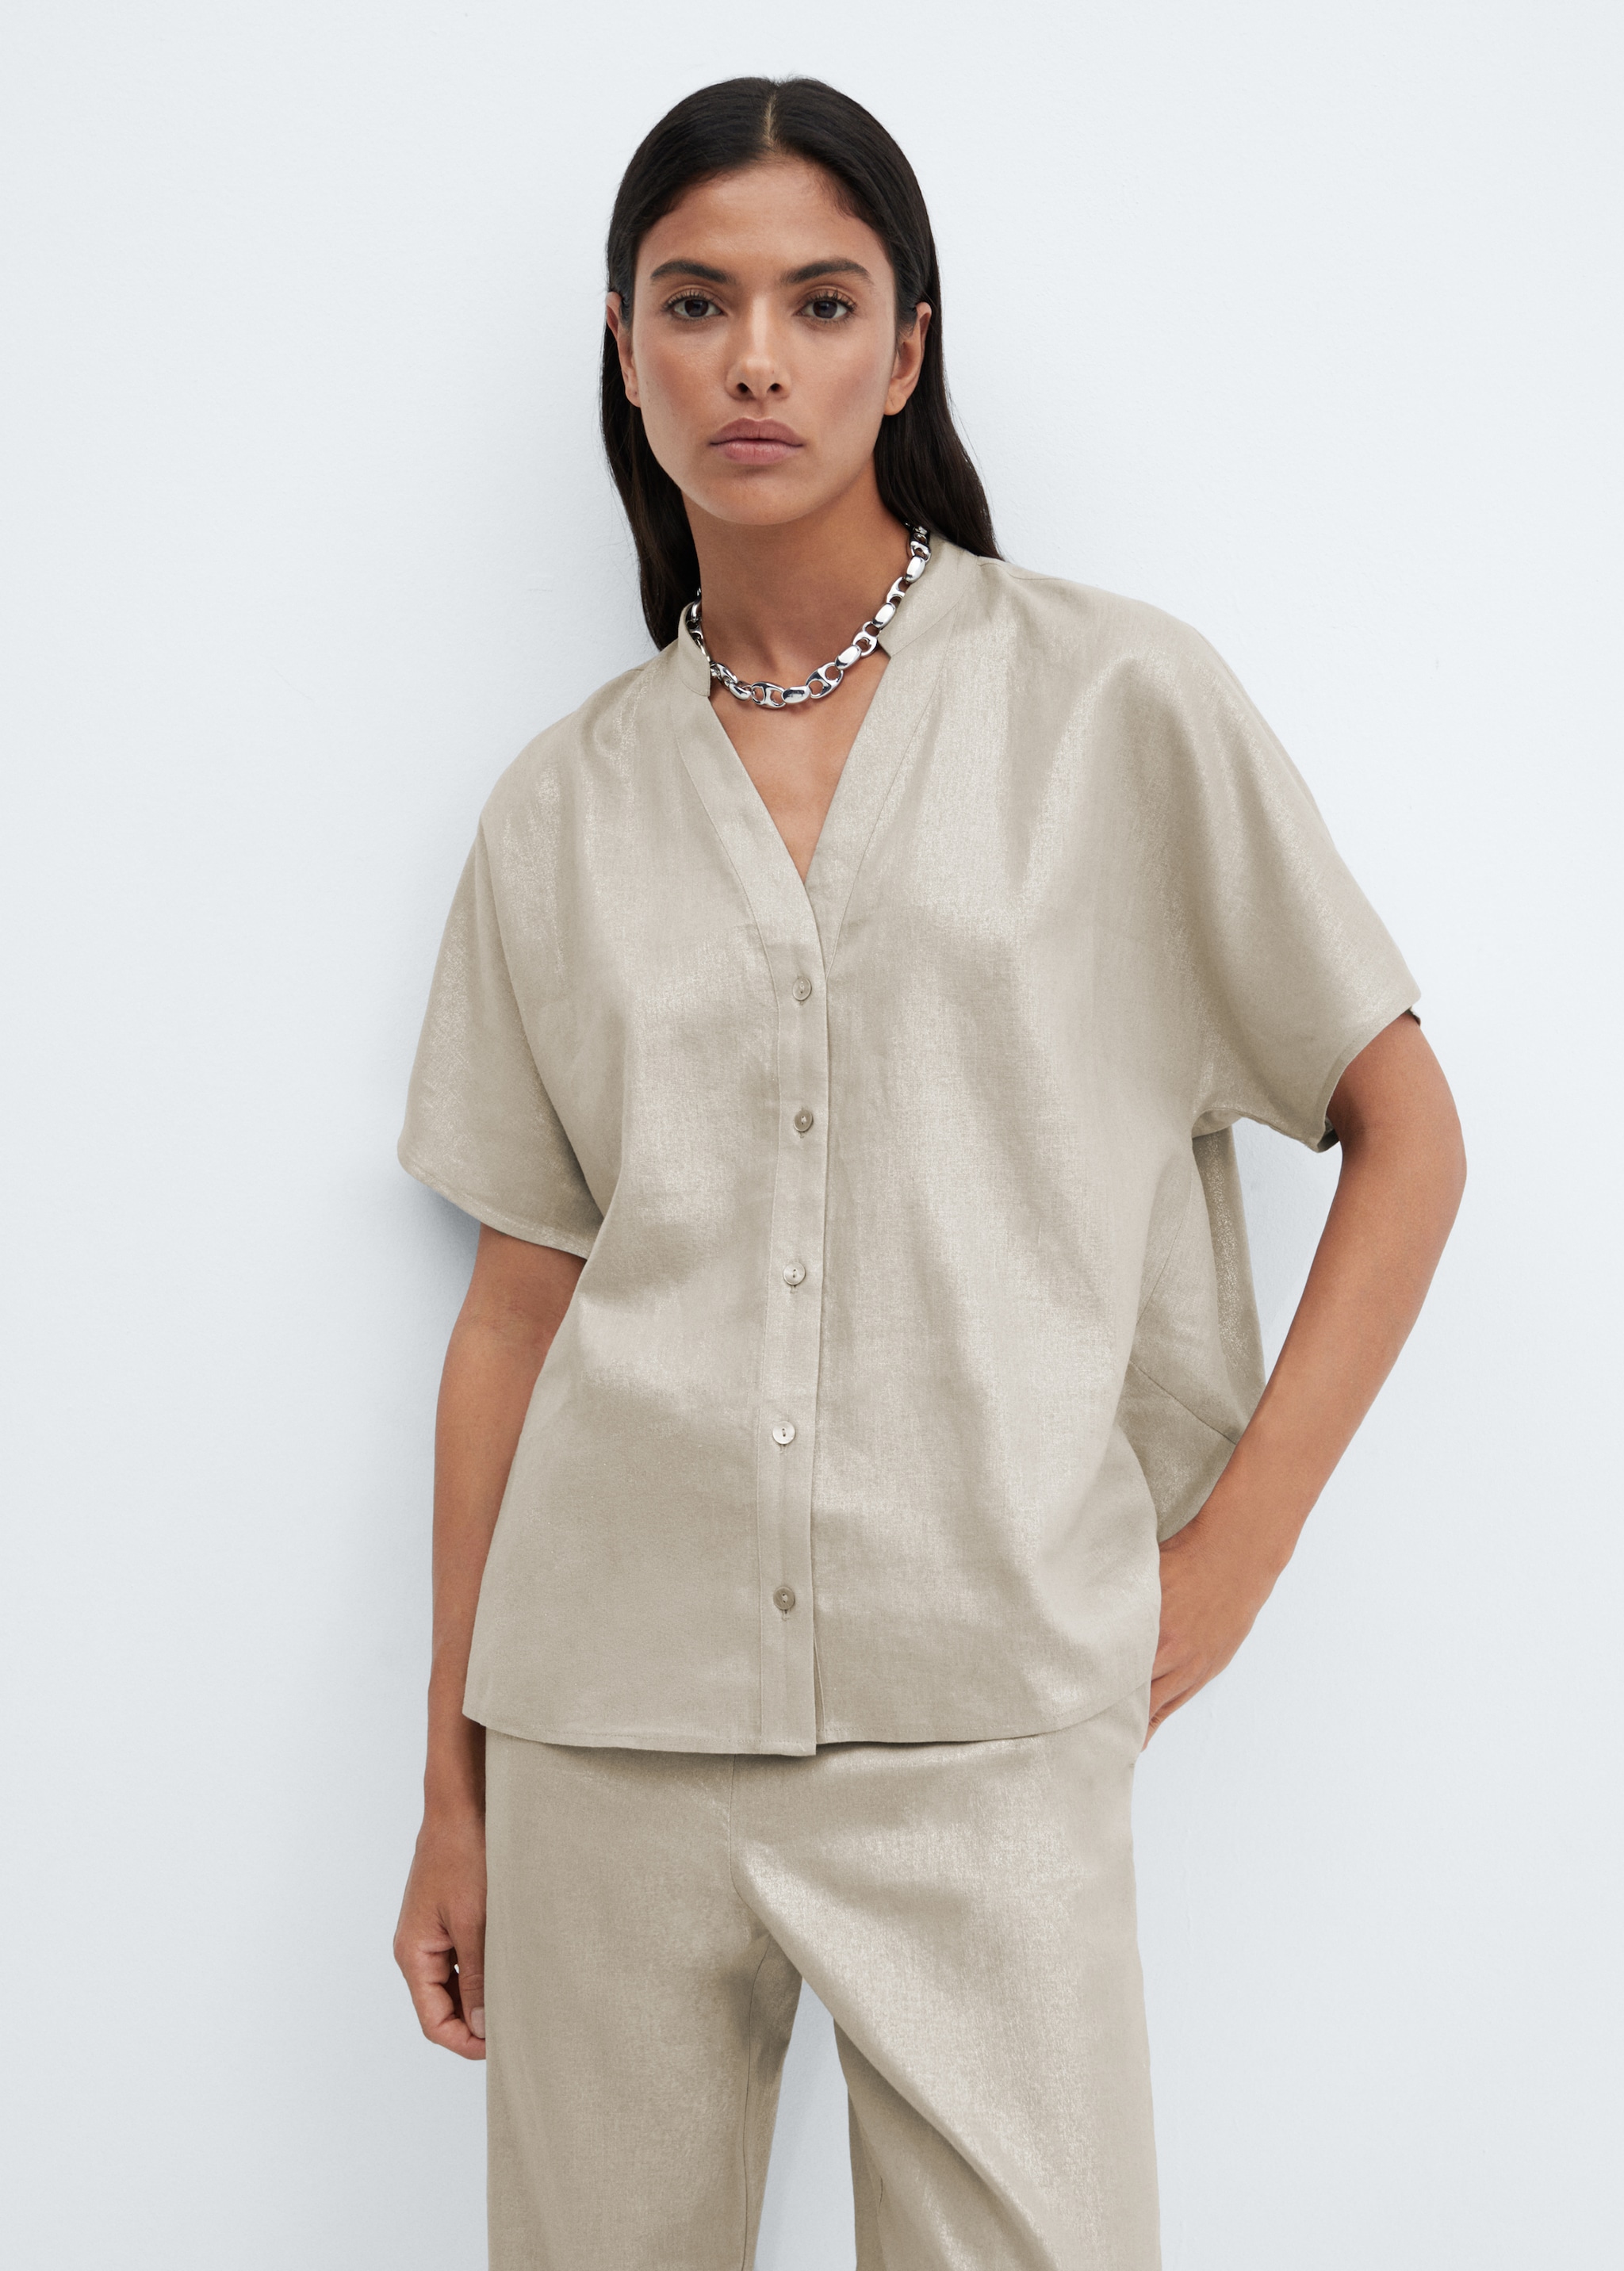 Short sleeve linen-blend shirt - Medium plane